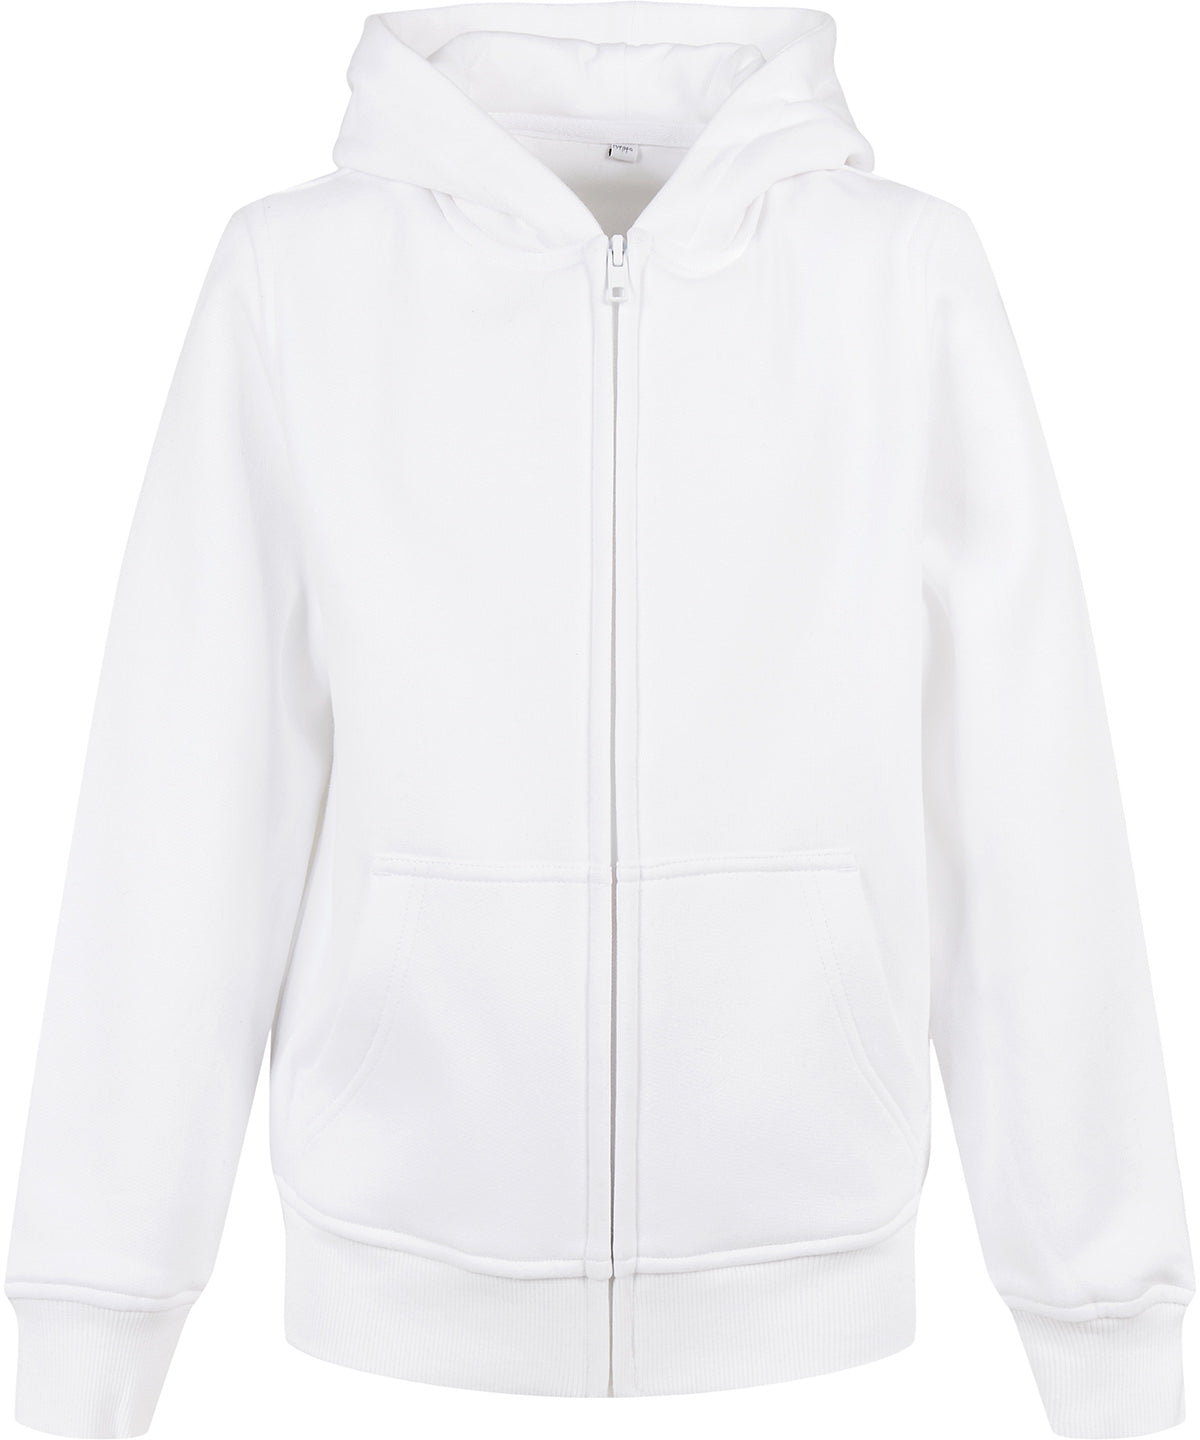 Personalised Hoodies - Black Build Your Brand Organic kids basic zip hoodie